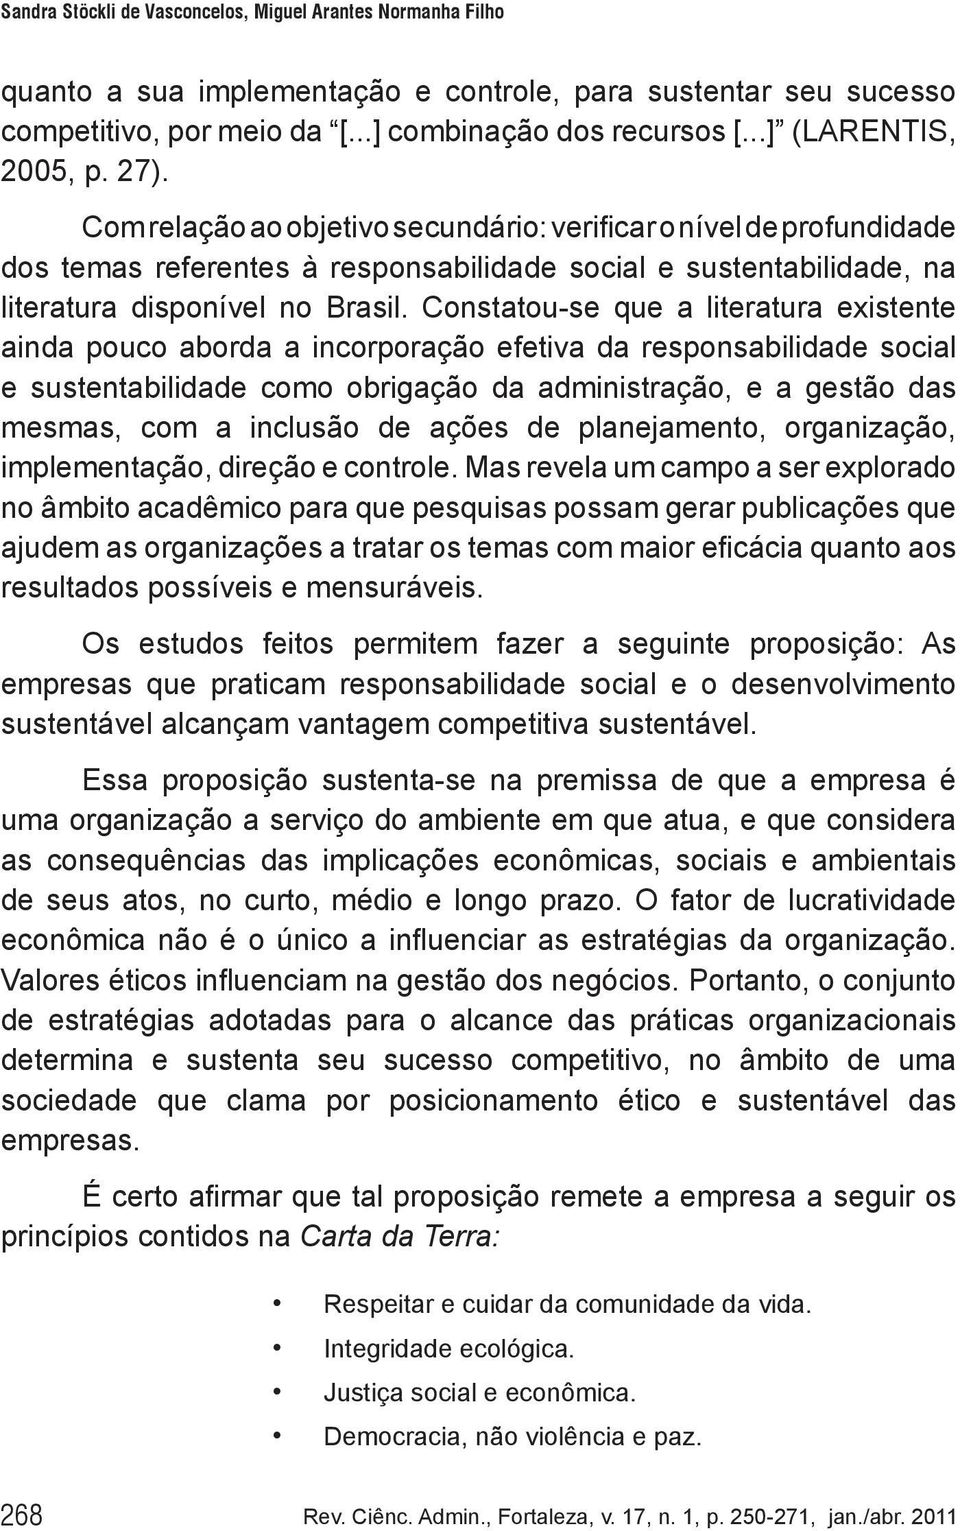 Com relação ao objetivo secundário: verificar o nível de profundidade dos temas referentes à responsabilidade social e sustentabilidade, na literatura disponível no Brasil.